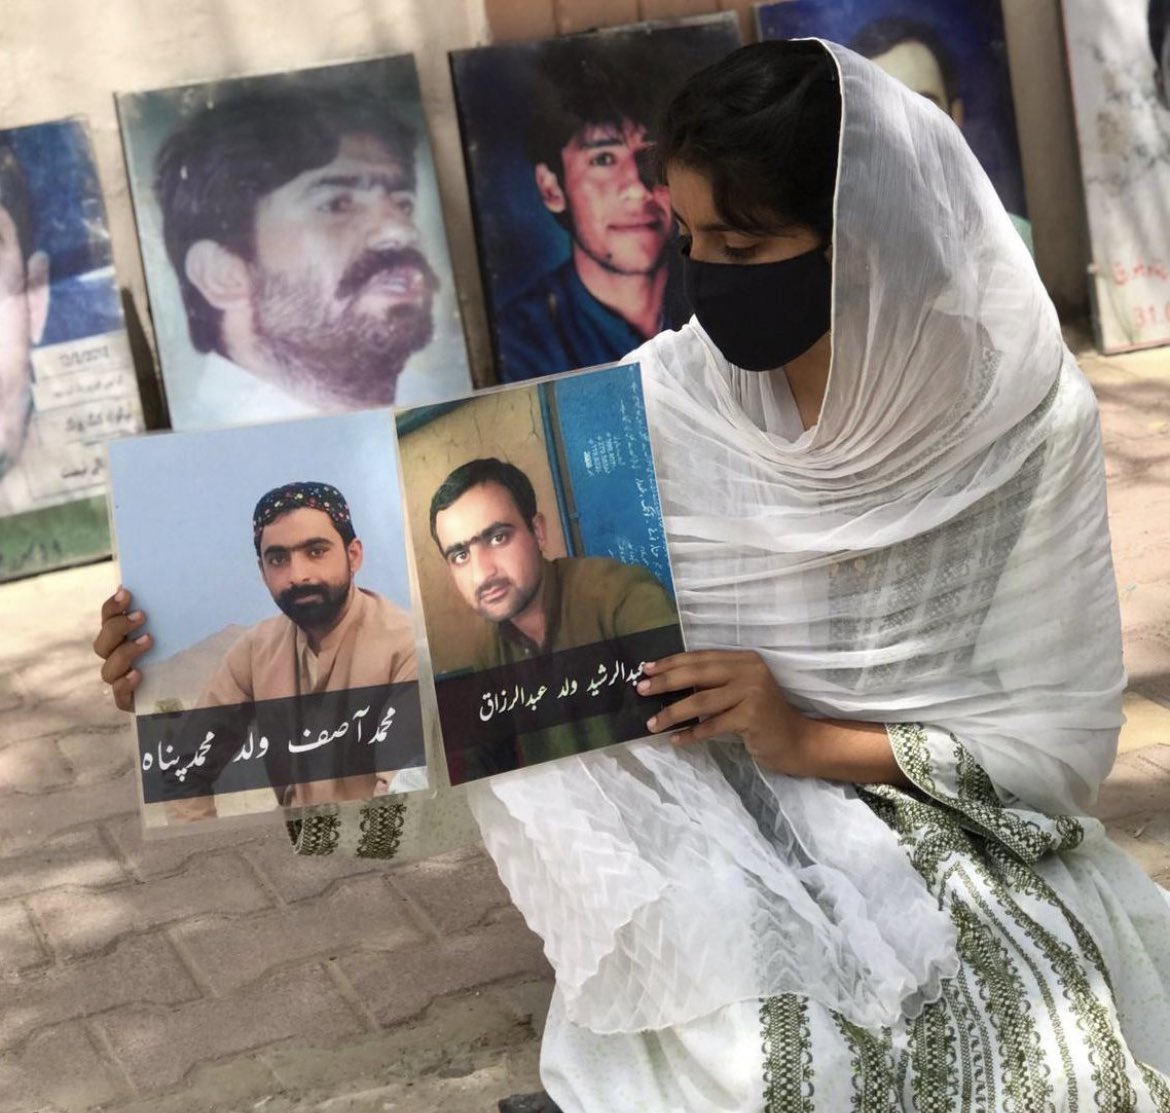 ترستی ہوئی آنکھیں درد کی داستان 
#ReleaseAsifAndRasheedBaloch
#StopBalochGenocide 
#Balochistan